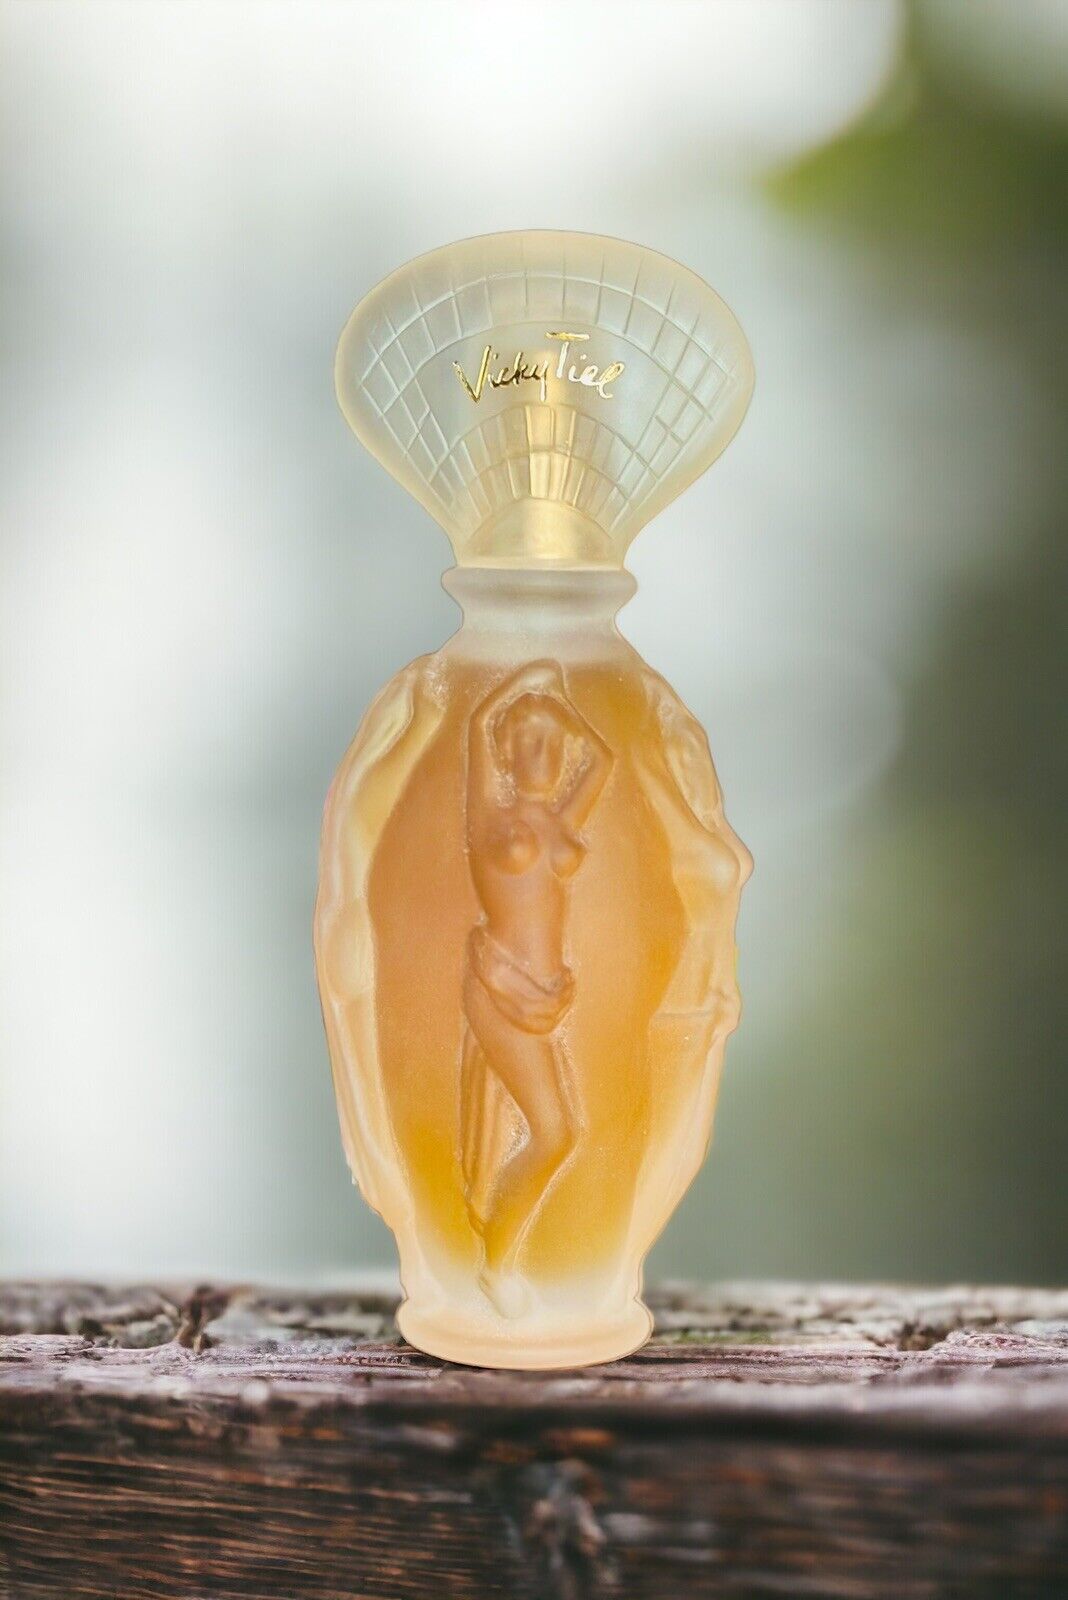 Vicky Tiel Originale Eau De Parfum Spray 3.3 Oz Vintage Frosted Glass Bottle